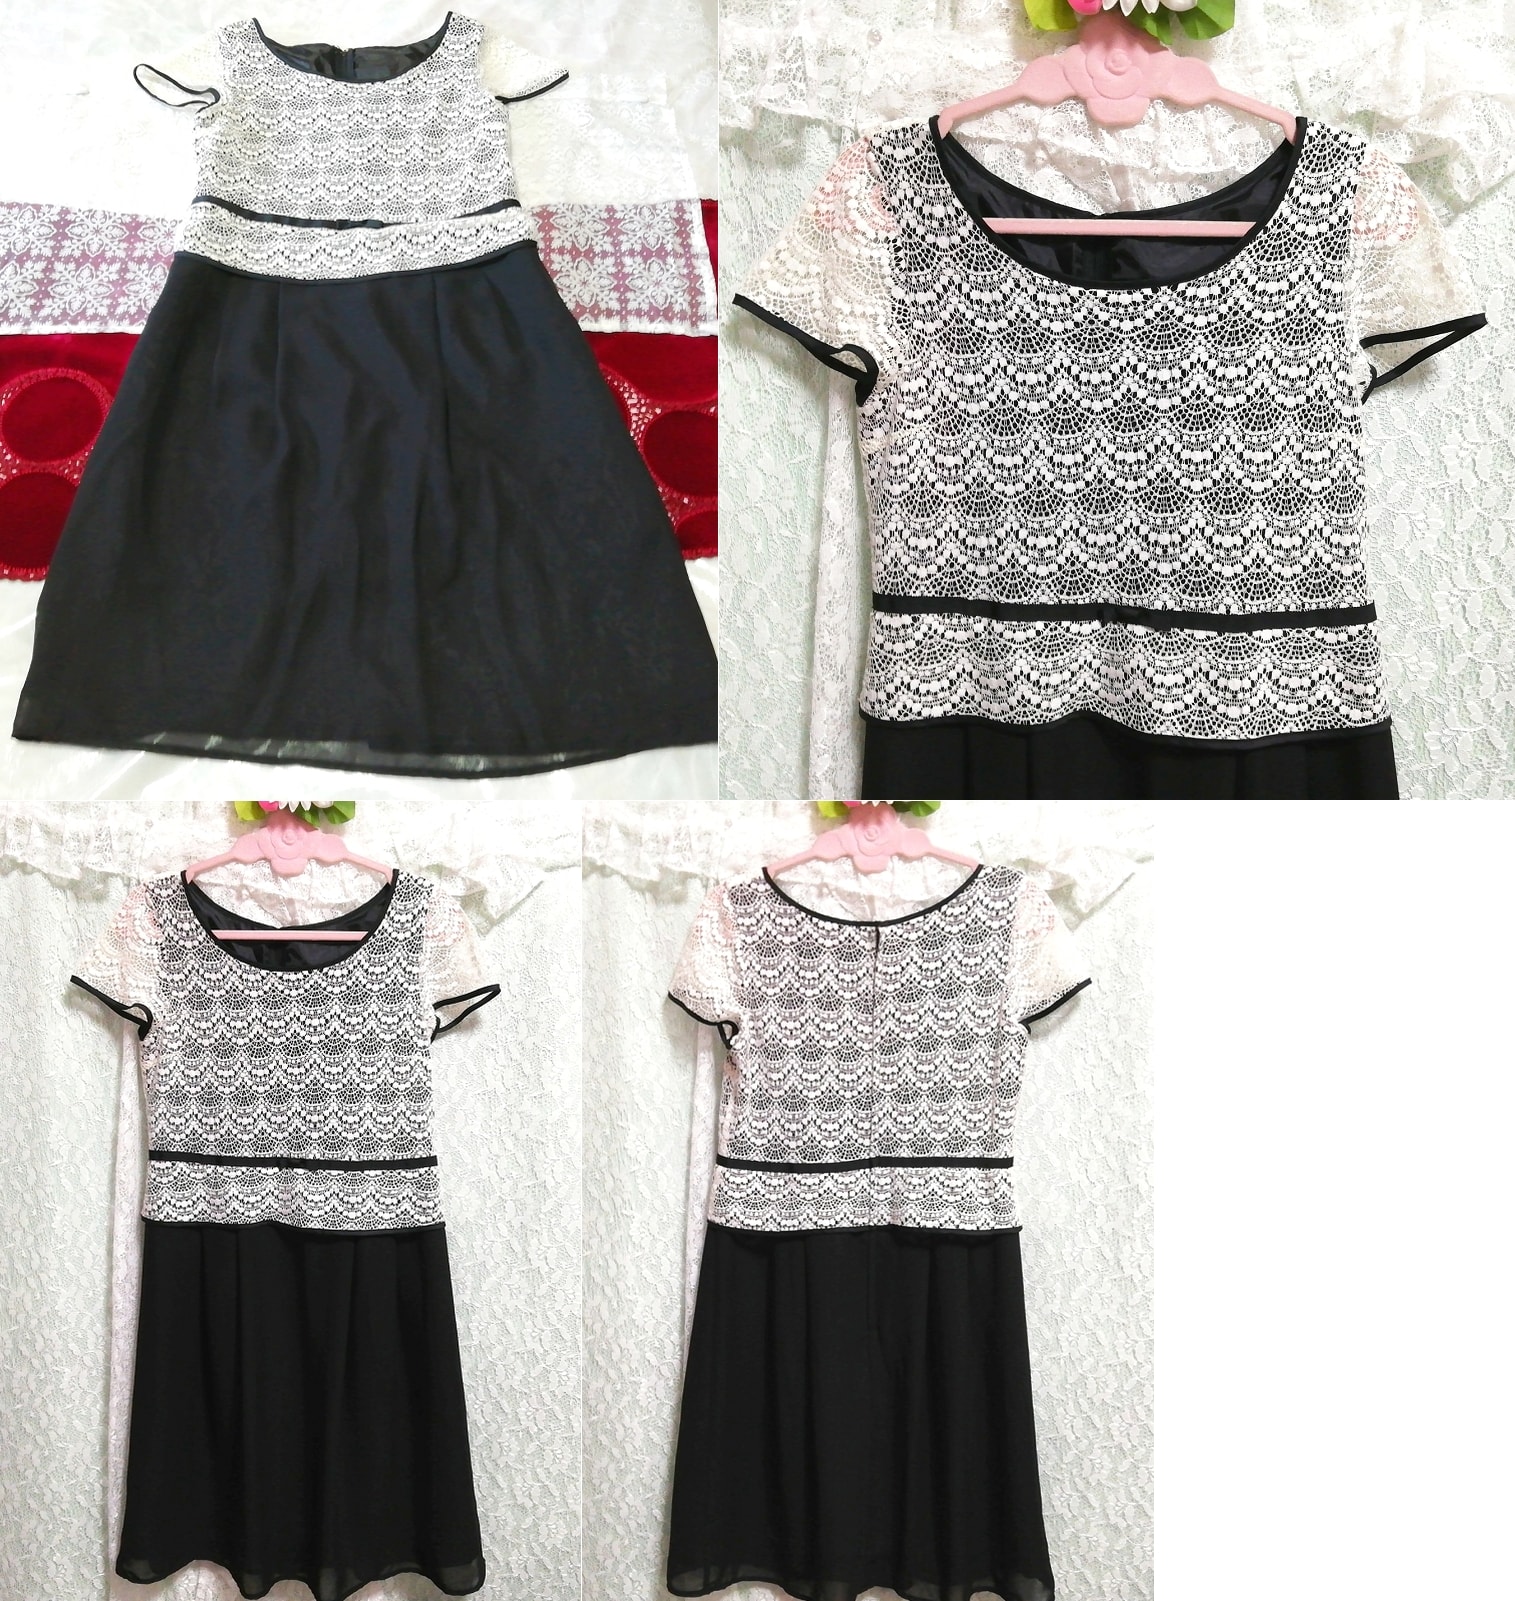 Kurzärmliges Tunika-Negligé-Nachthemdkleid mit weißem Spitzenrock und schwarzem Chiffonrock, Tunika, Kurzarm, Größe m